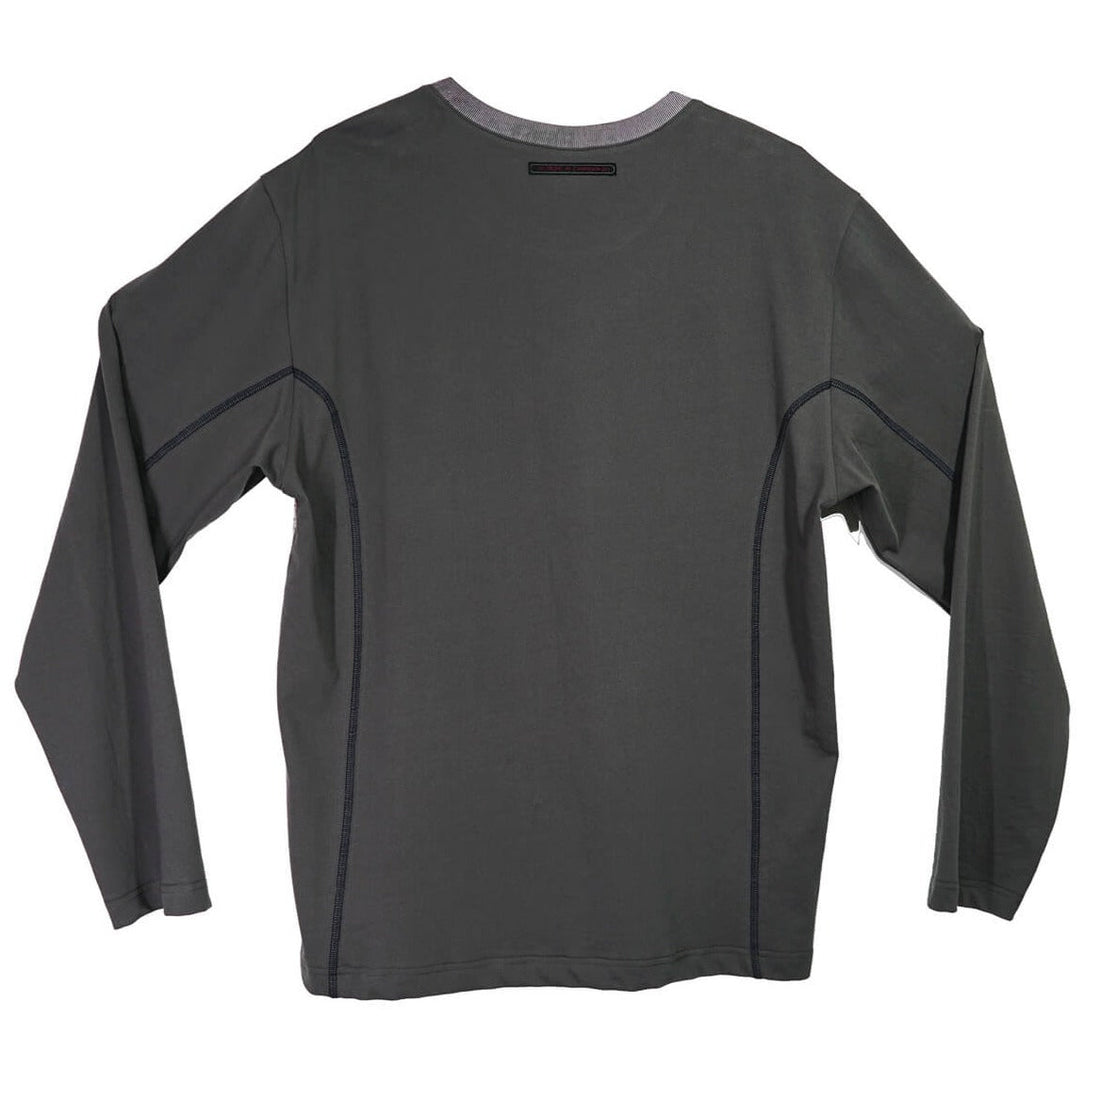 Skate Print Oversized Long Sleeve Gray Unisex Shirt